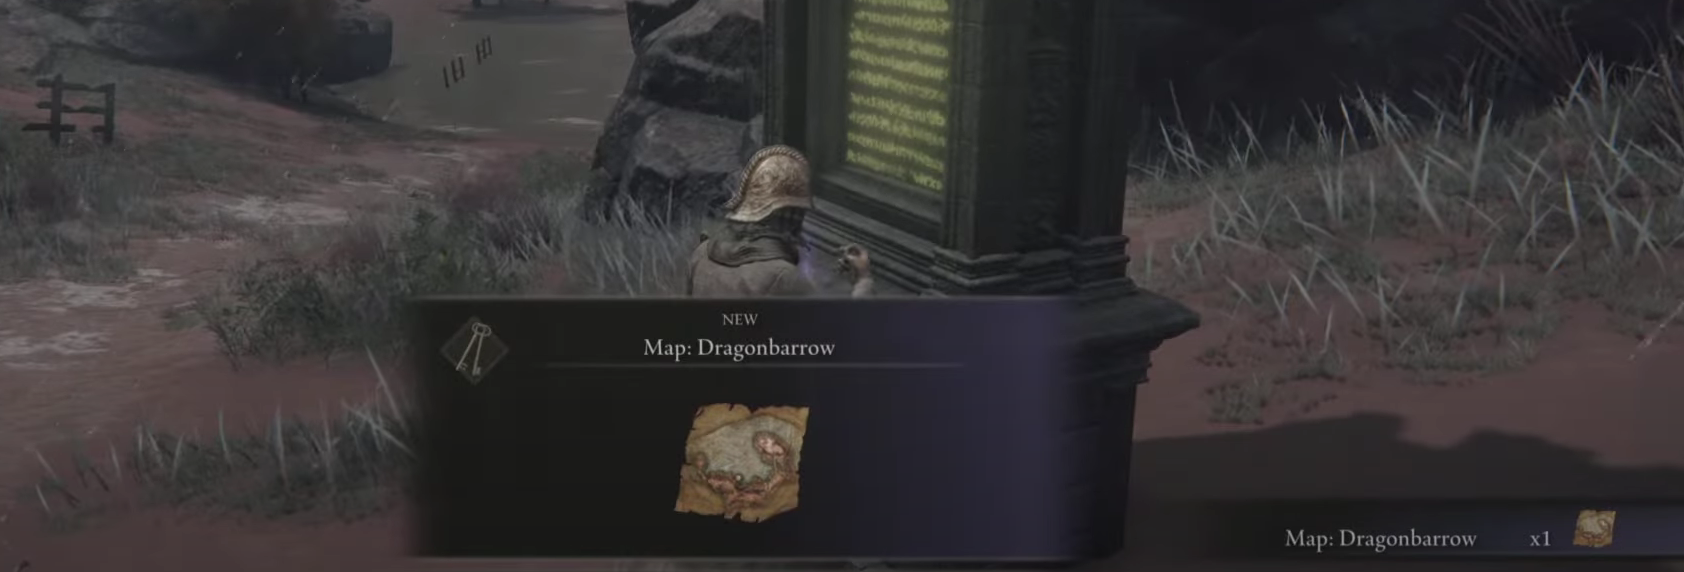 Dragonbarrow Map Fragment Found